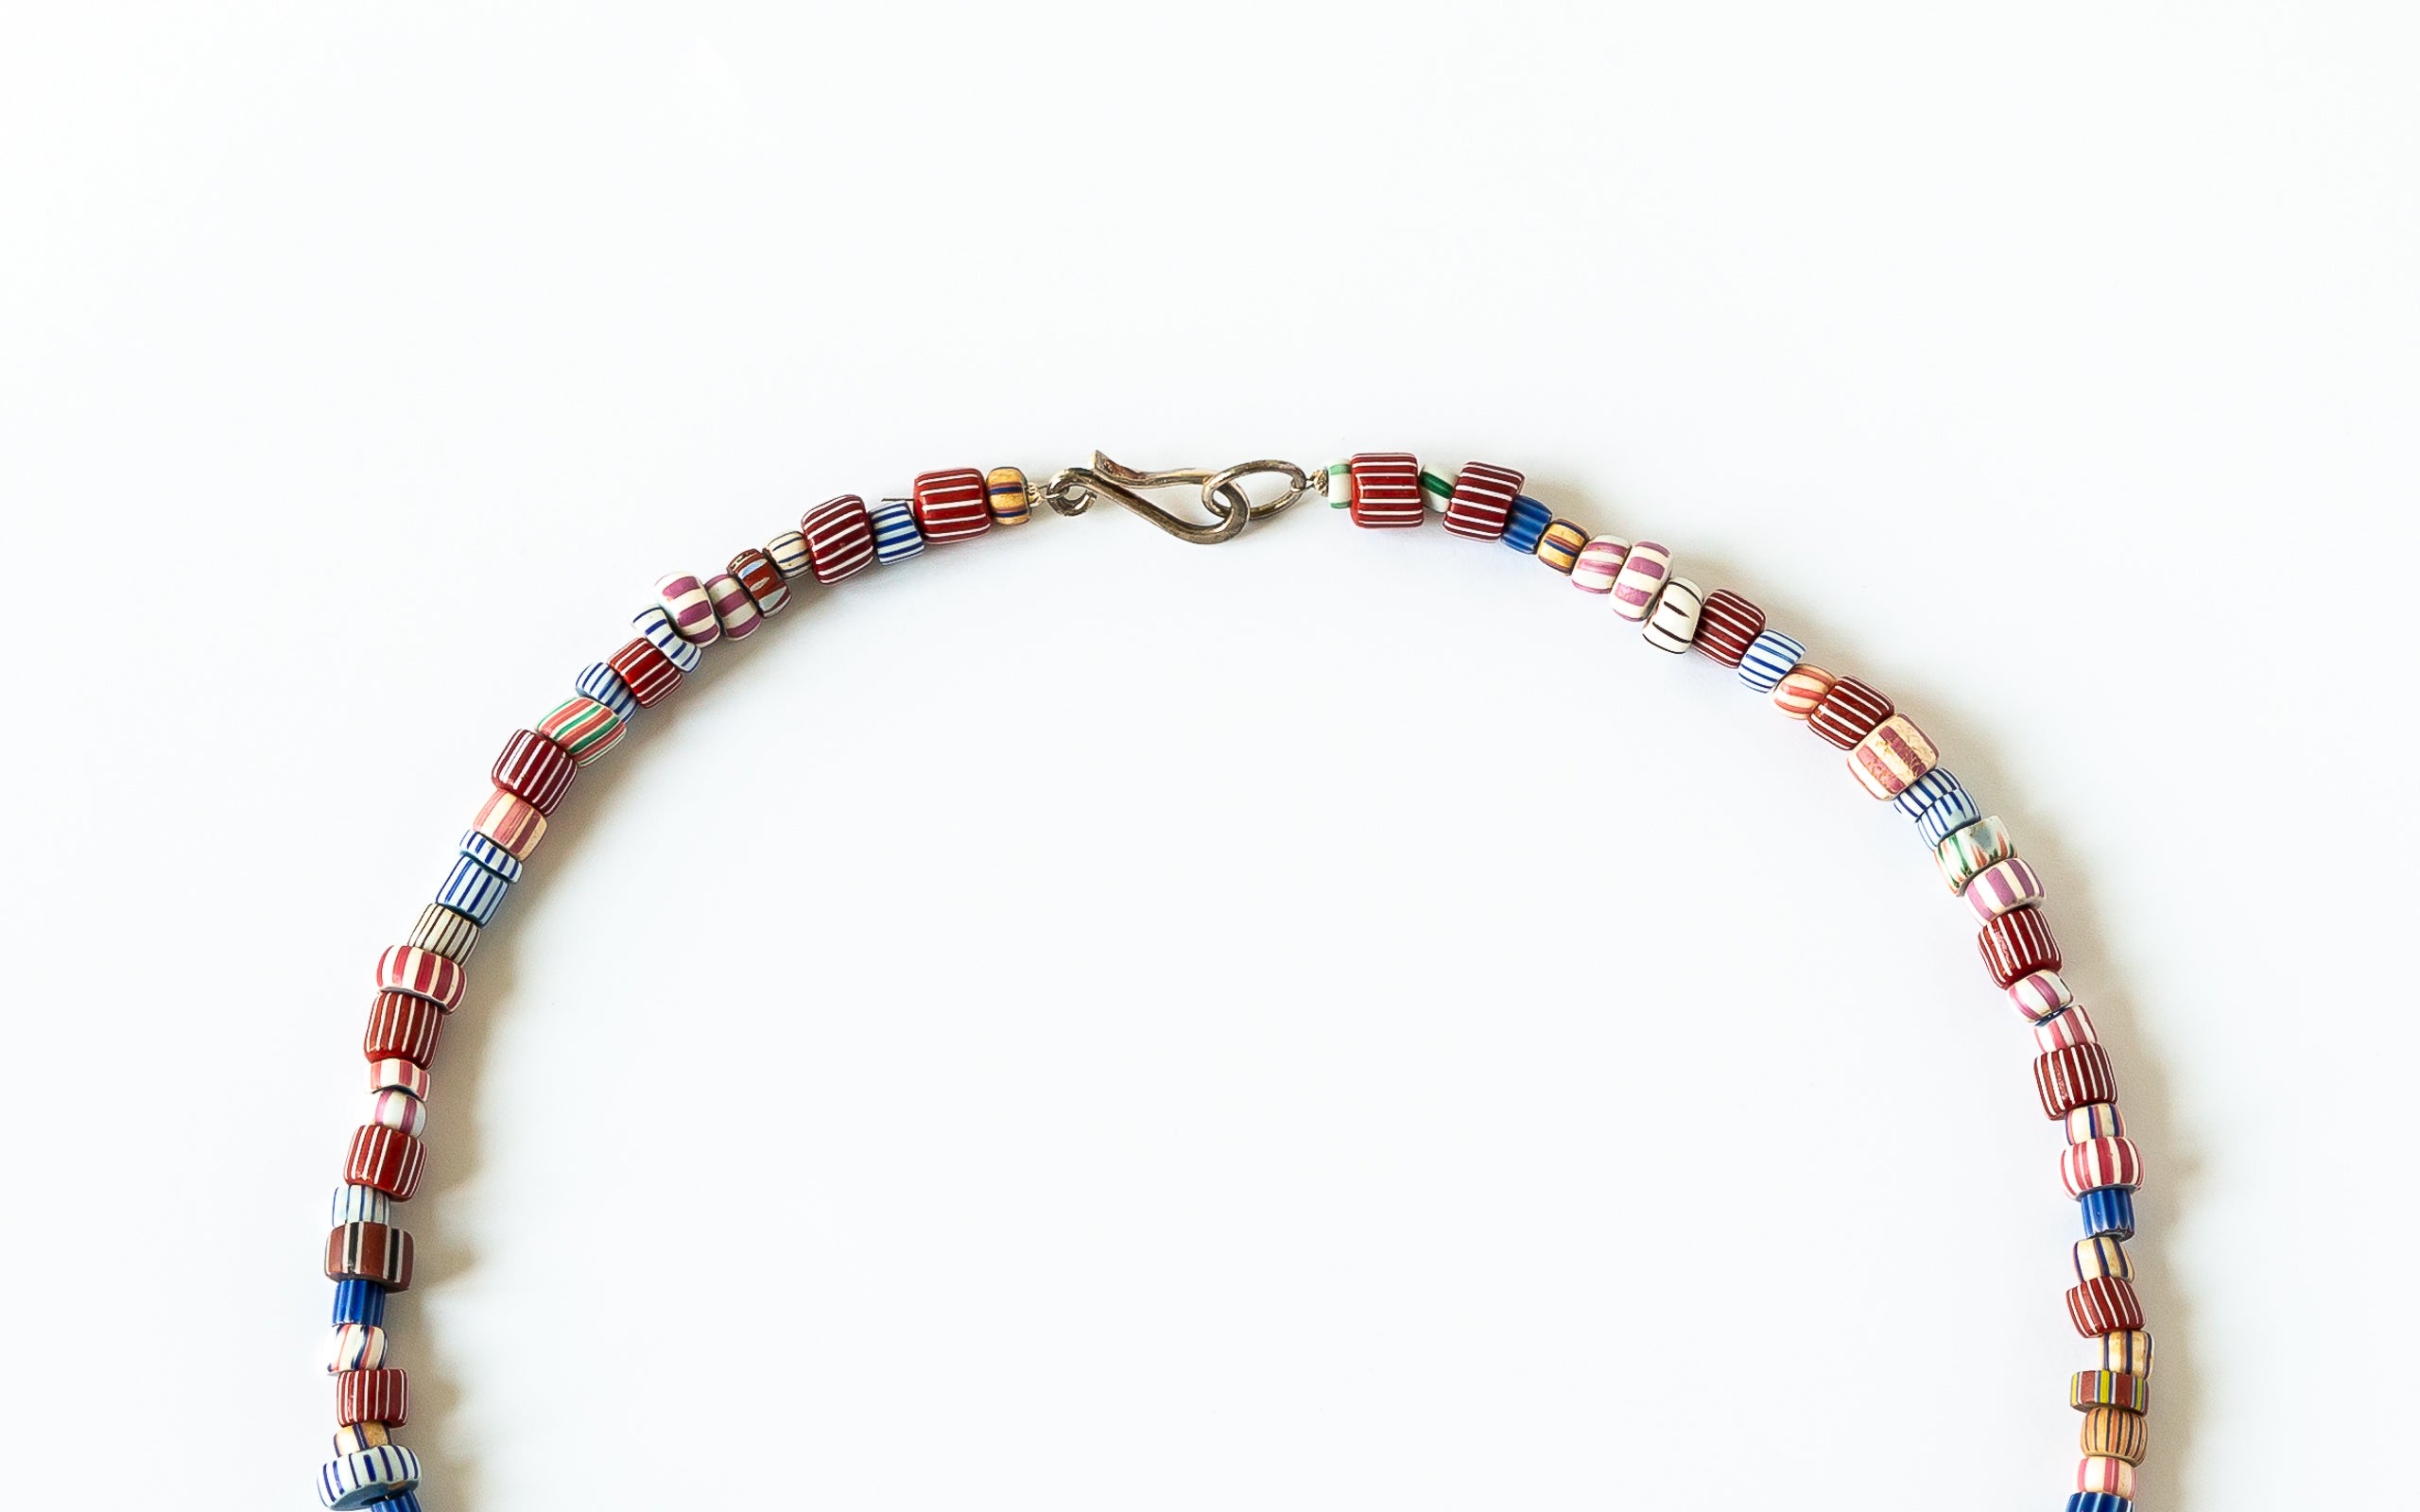 Detail mit Silberhakenverschluss von Halskette mit alten Trade Bead Perlen.